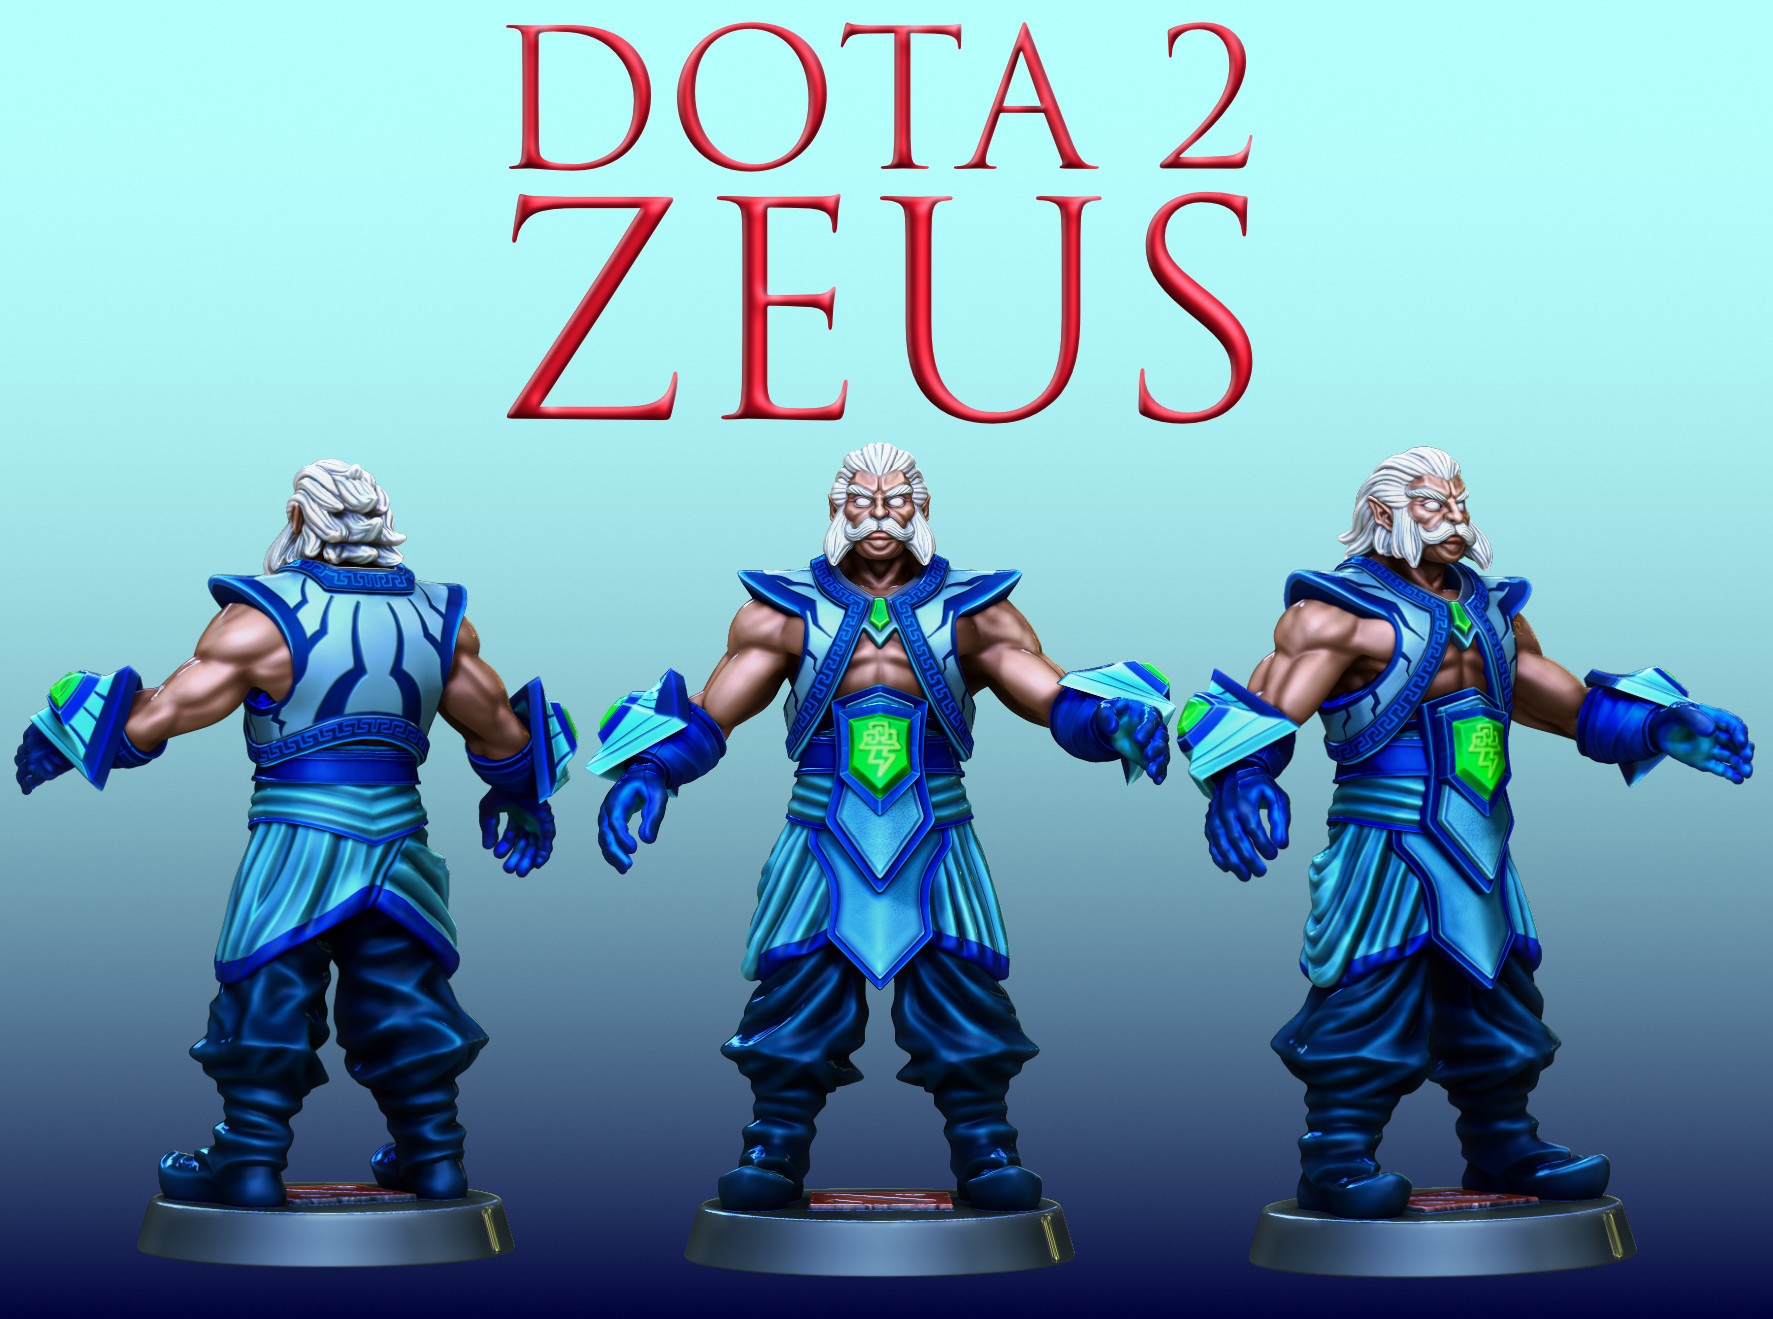 Zeus chat 2 dota Zeus: Matches